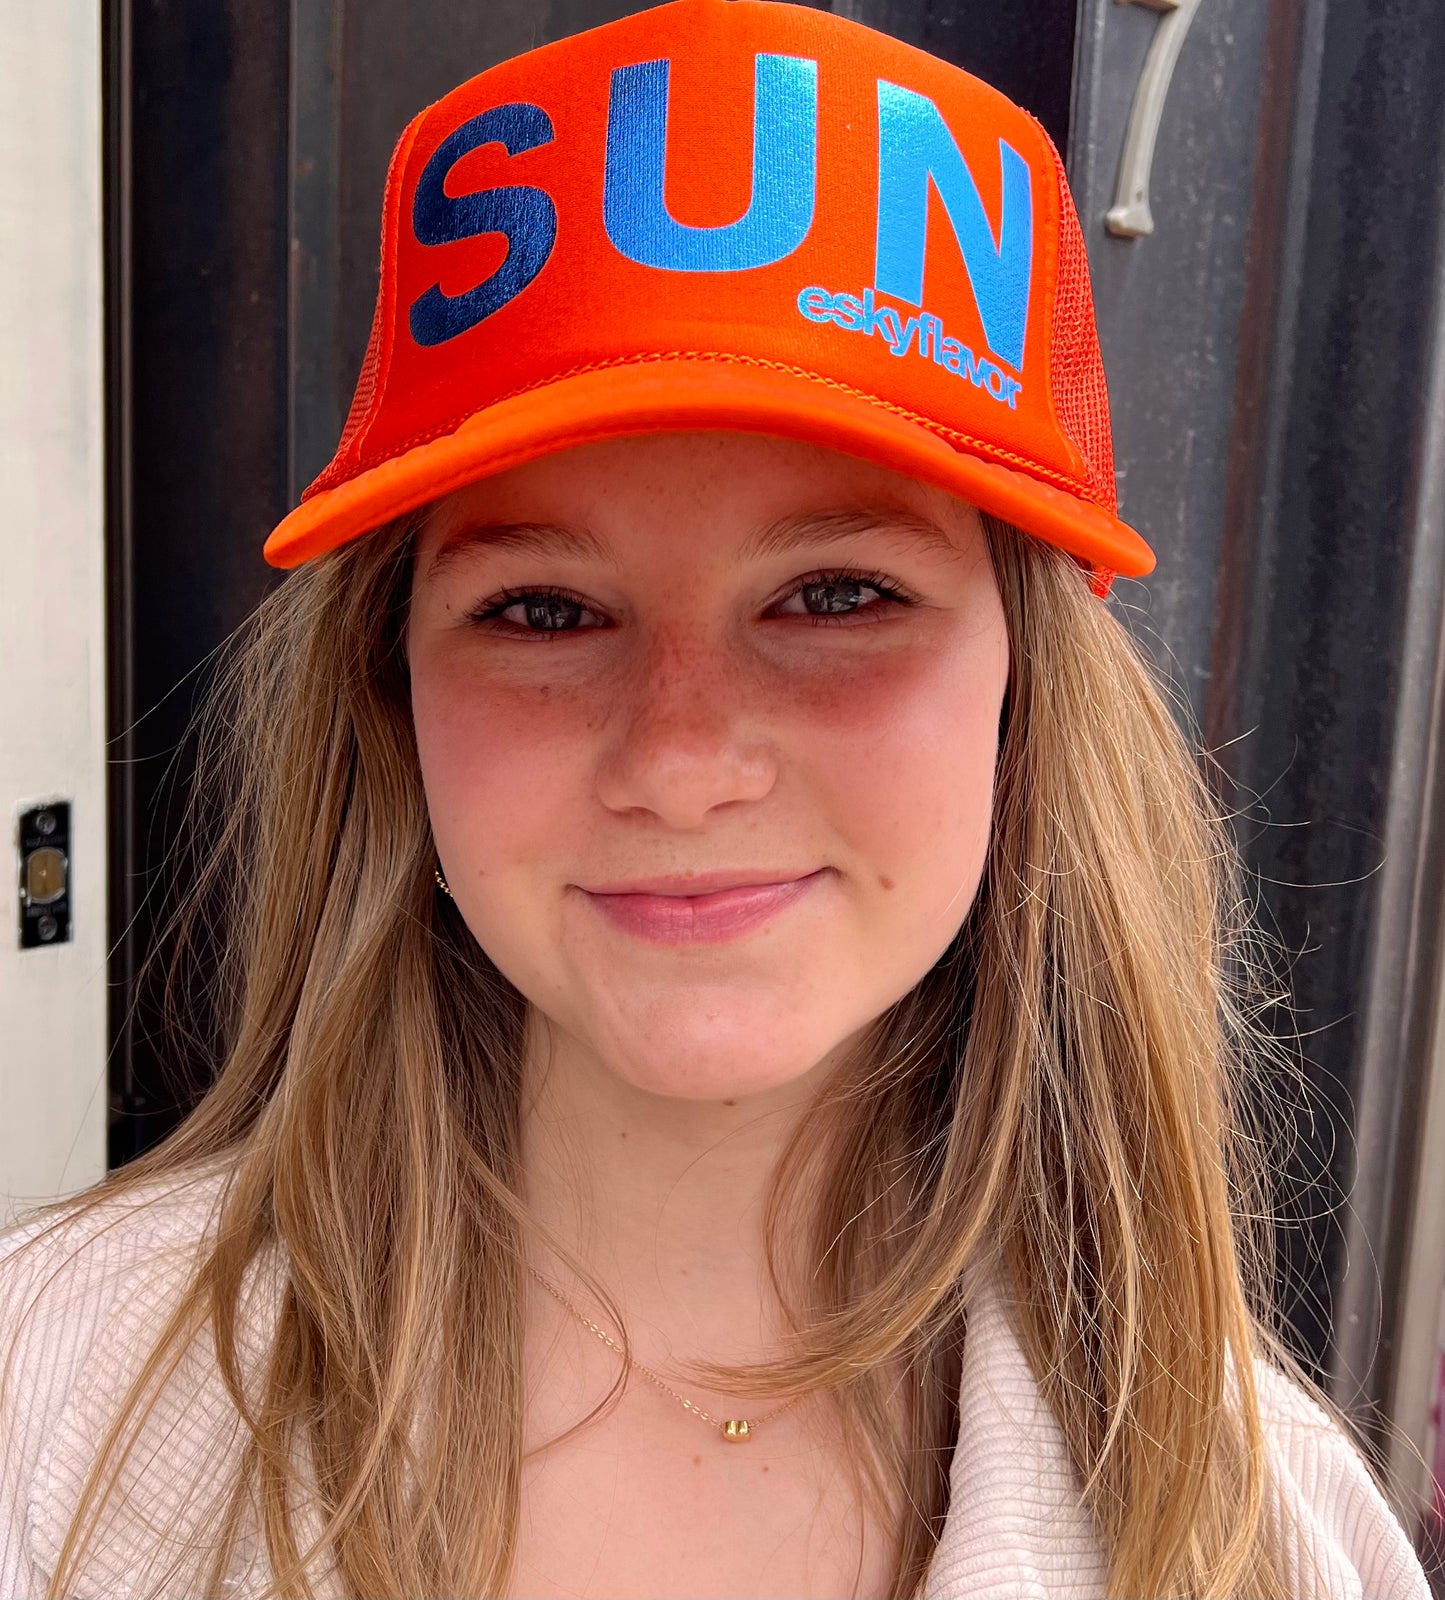 Eskyflavor SUN Hat